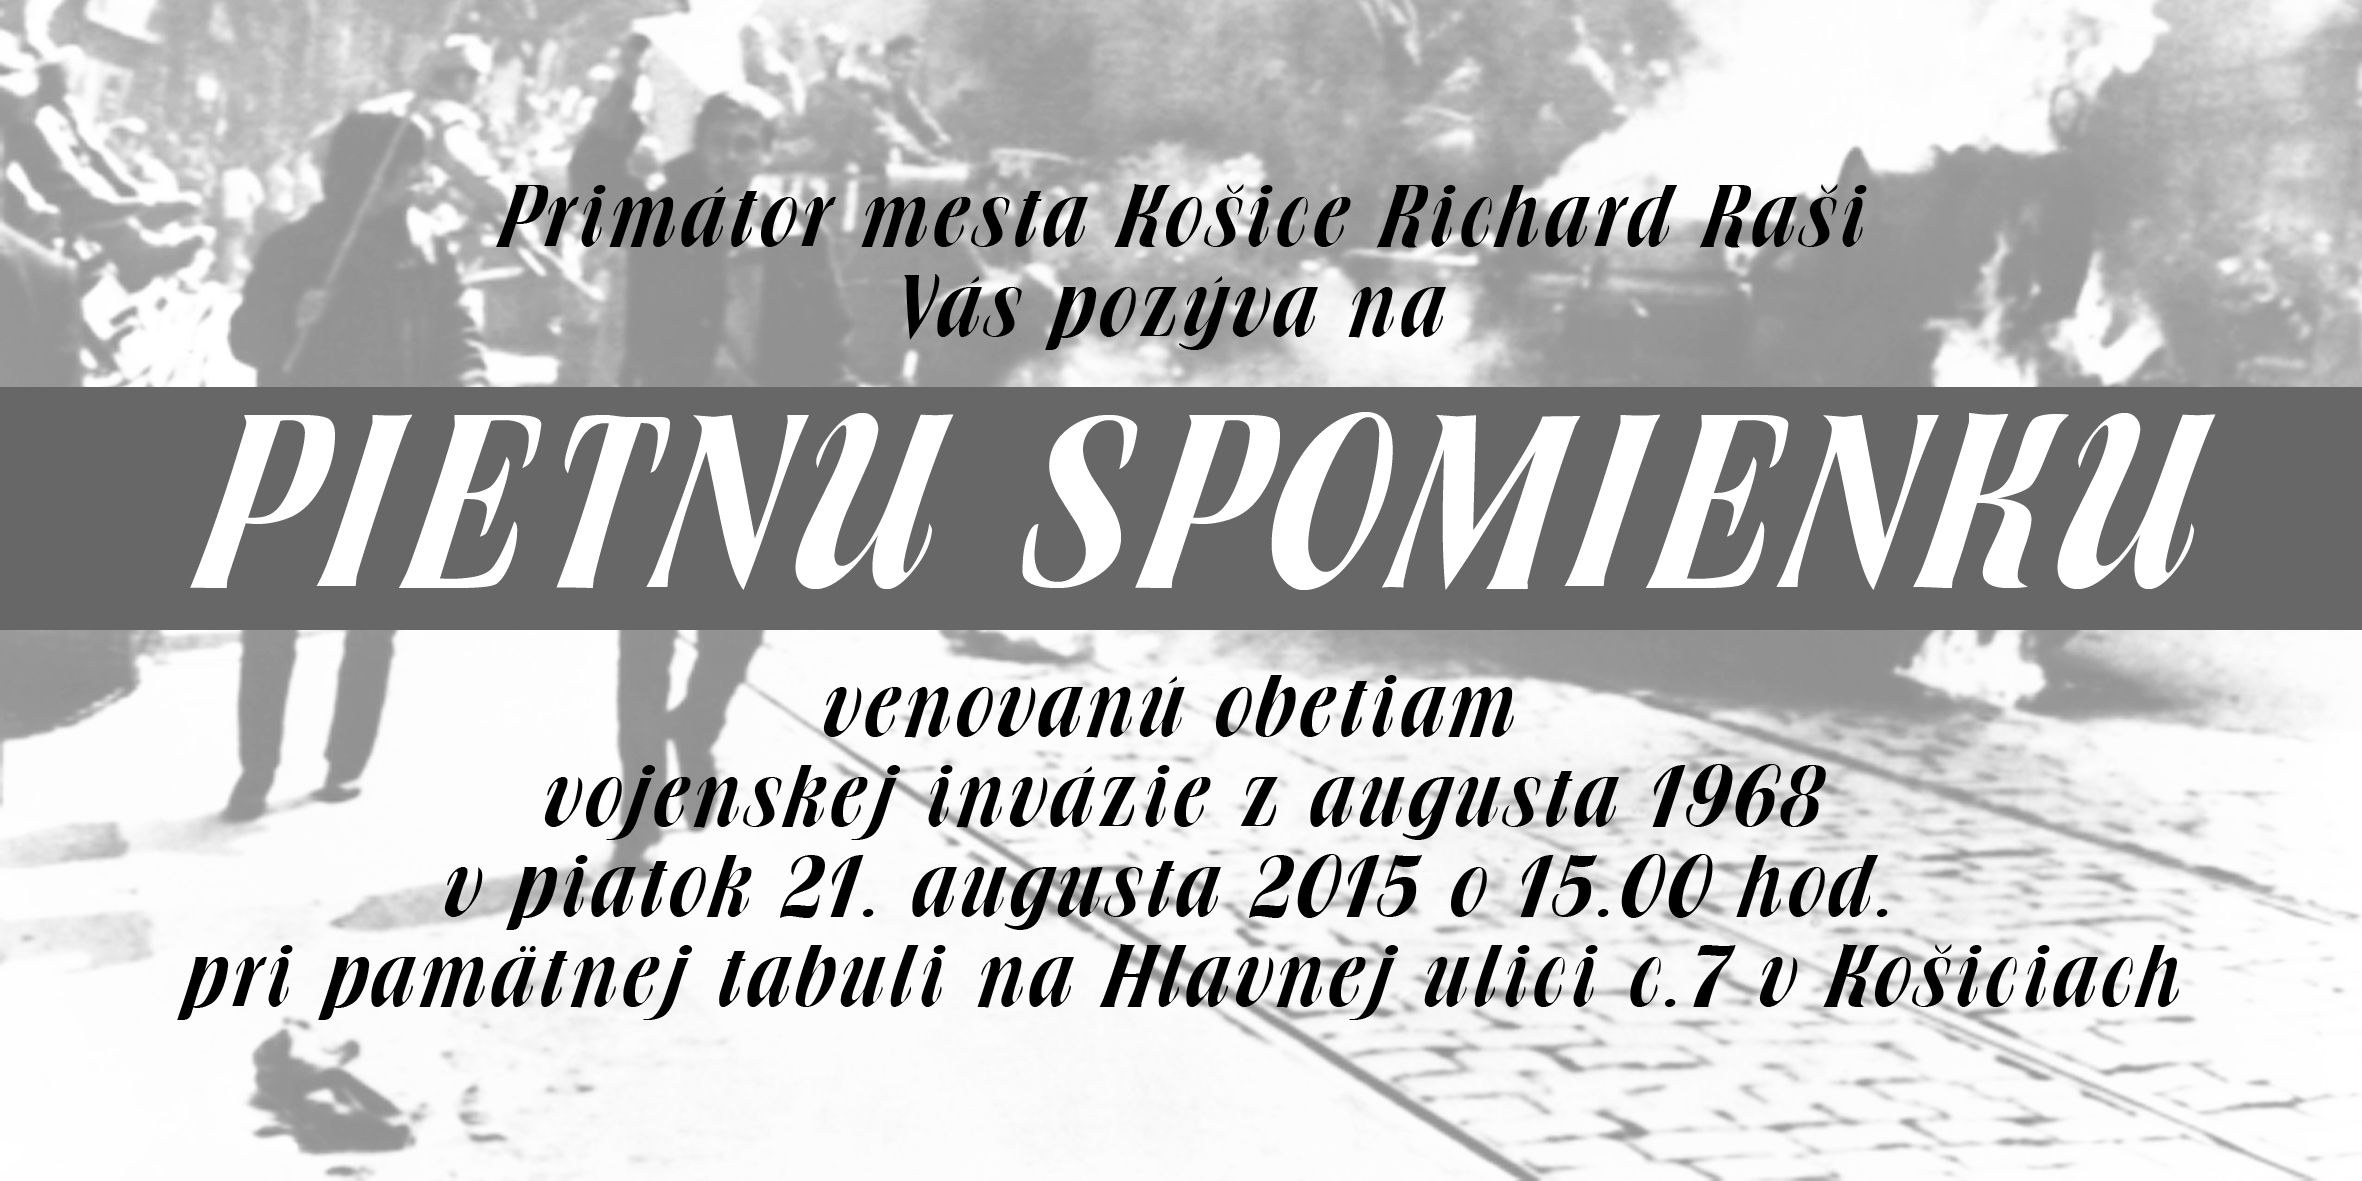 Pozvánka na pietnu spomienku venovanú obetiam vojenskej invázie z augusta 1968